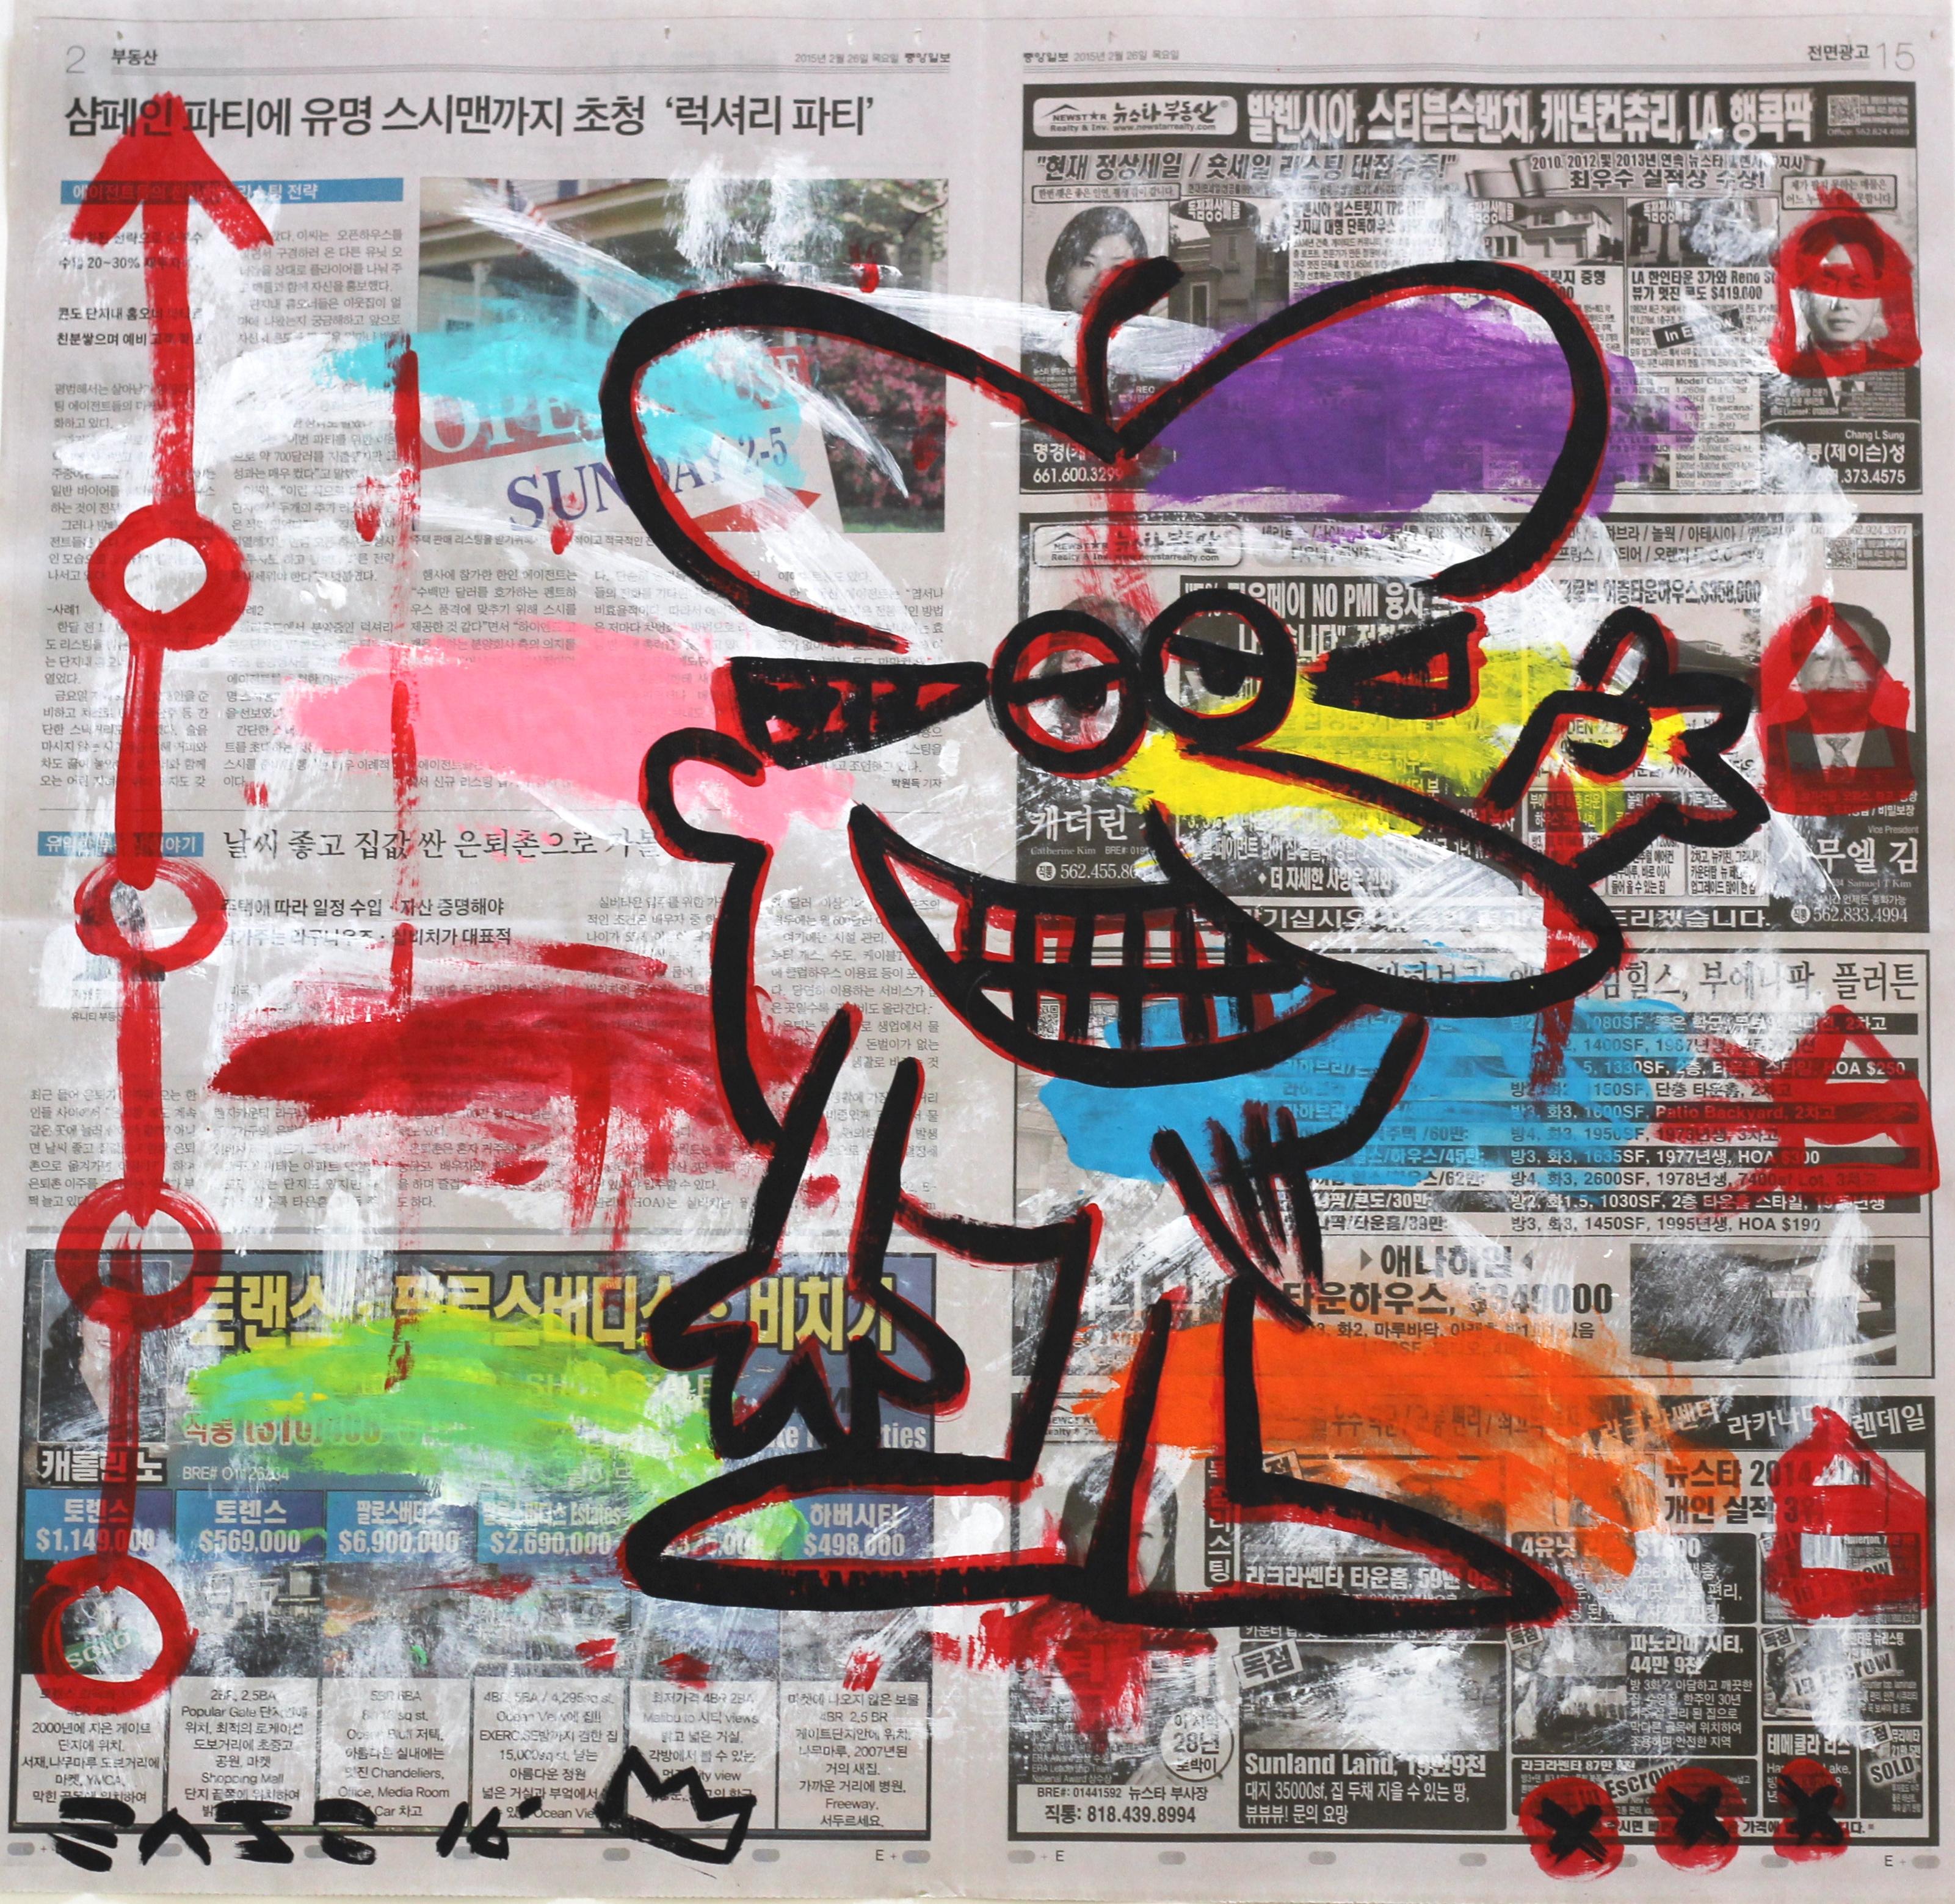 Gary John, street artiste de Los Angeles, a explosé sur la scène artistique internationale lors de la foire d'art Art Basel Miami en 2013. Le travail audacieux et ludique de John a rapidement attiré l'attention et il a été nommé l'un des 20 artistes